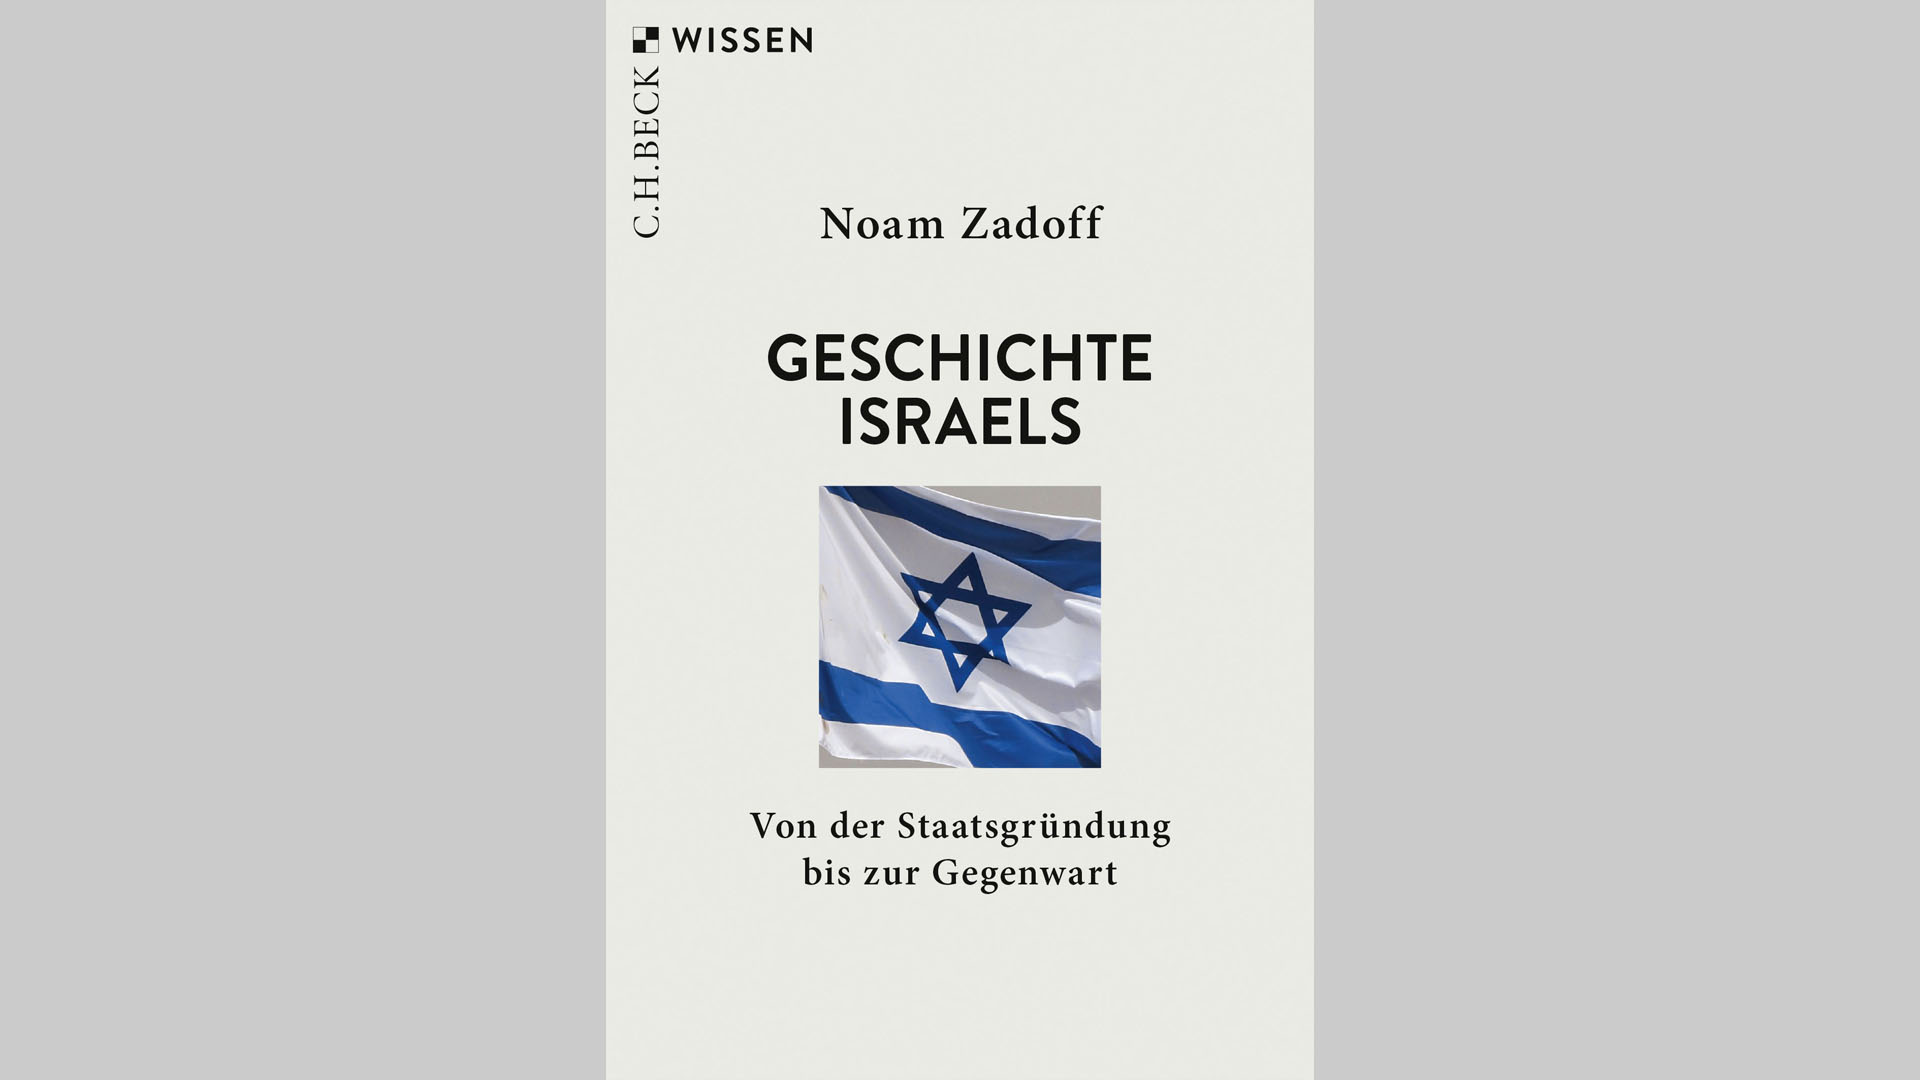 Noam Zadoff: „Geschichte Israels. Von der Staatsgründung bis zur Gegenwart“, C. H. Beck, 144 Seiten, 9,95 Euro, ISBN 978-3-406-75755-6